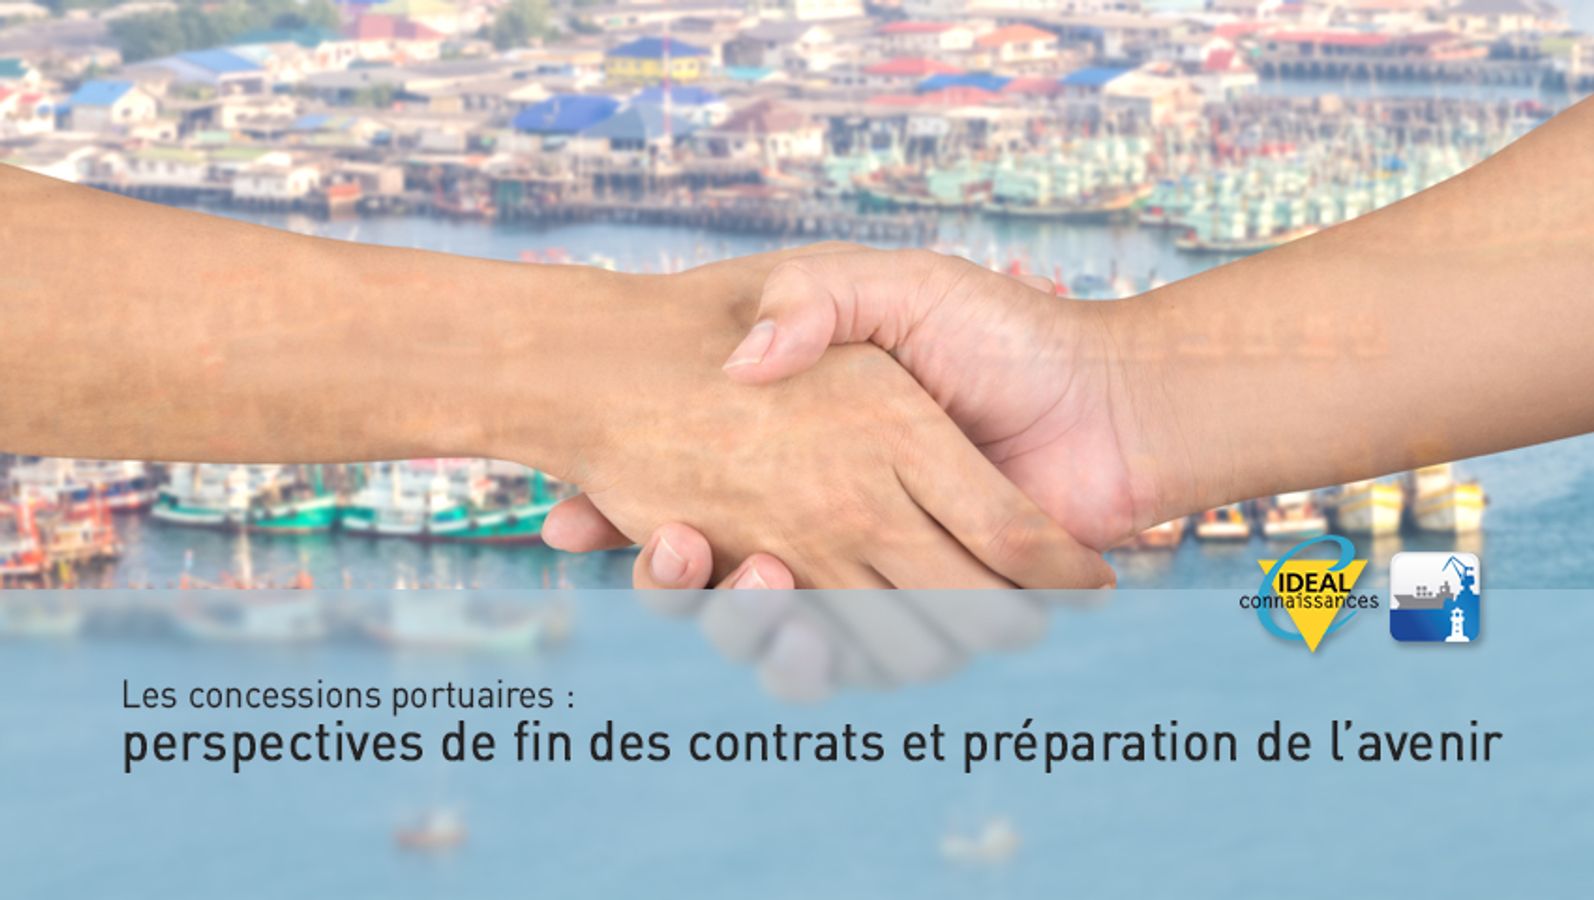 Les concessions portuaires : perspectives de fin des contrats et préparation de l’avenir